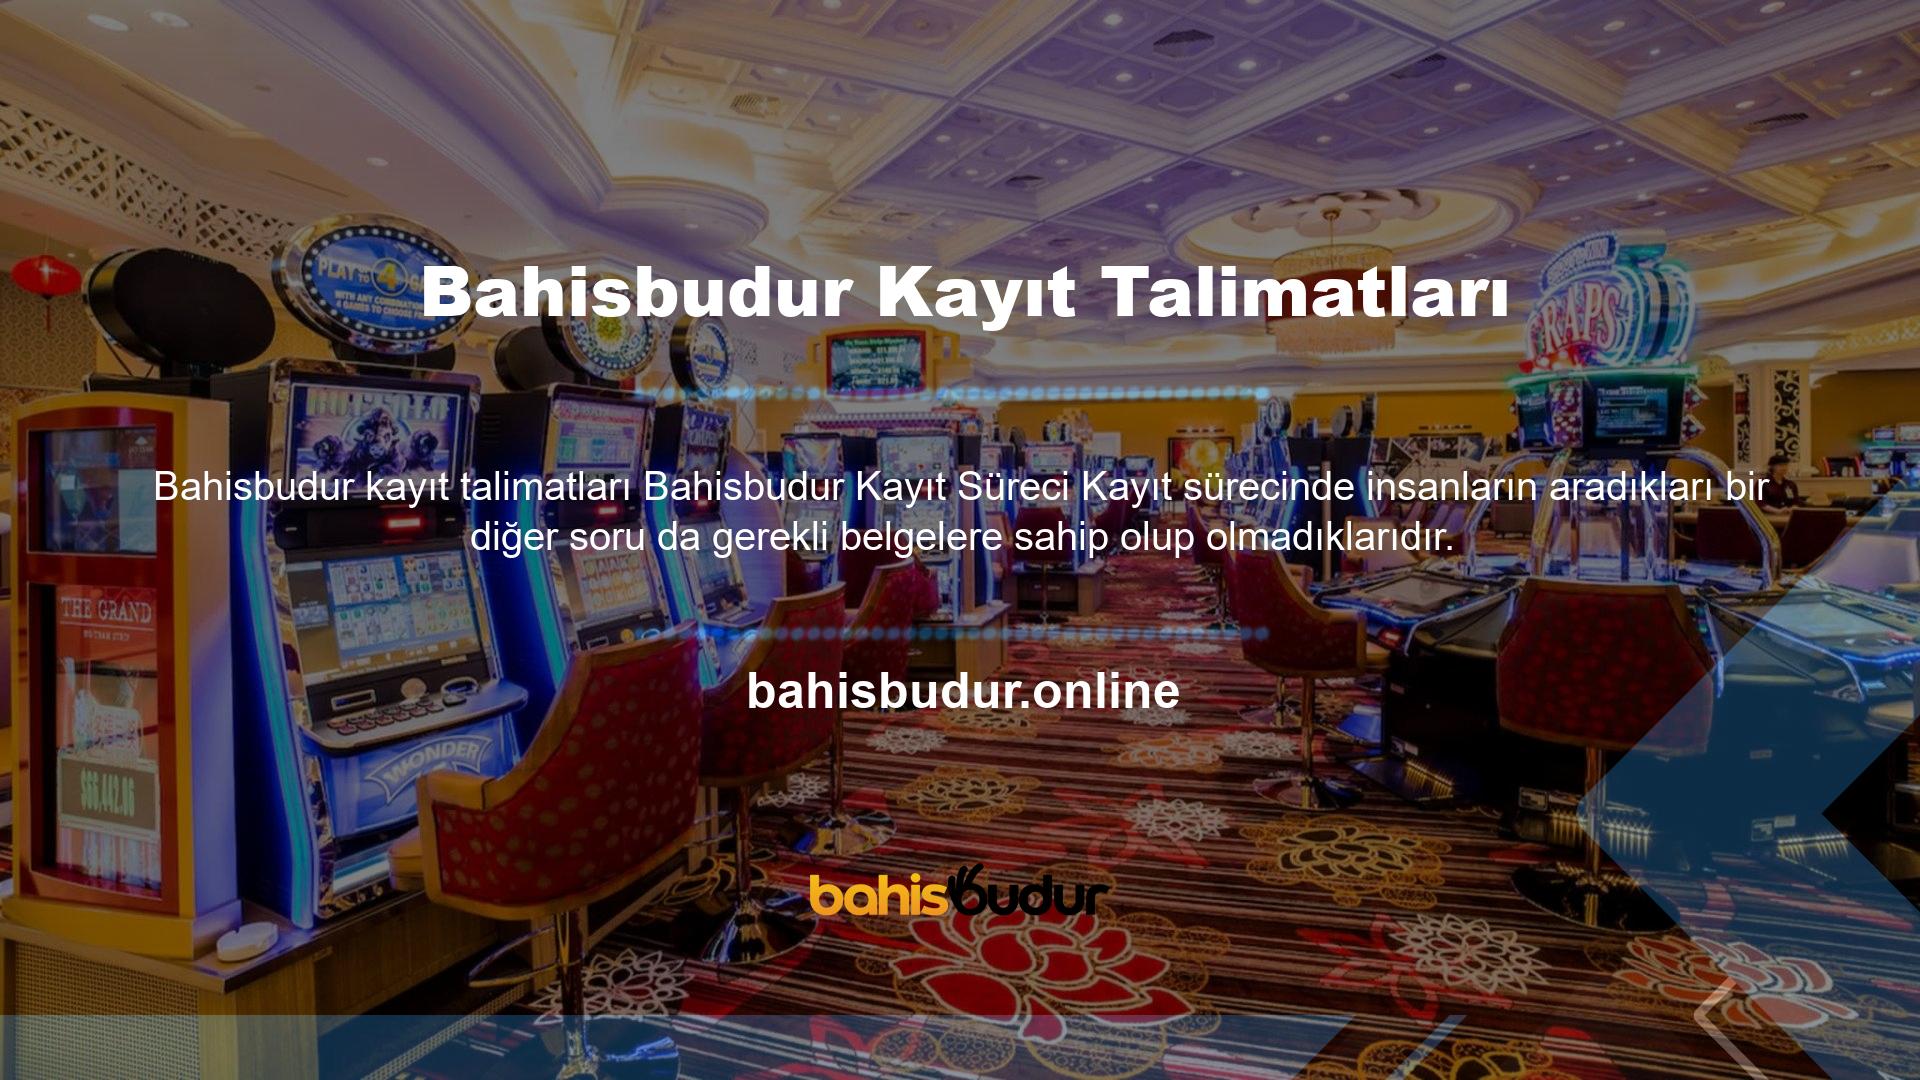 Bahisbudur, çevrimiçi bir oyun ve bahis platformu olarak oyun oynamak ve para kazanmak isteyen kişileri kayıtlı kullanıcı olmaya davet etmek istiyor